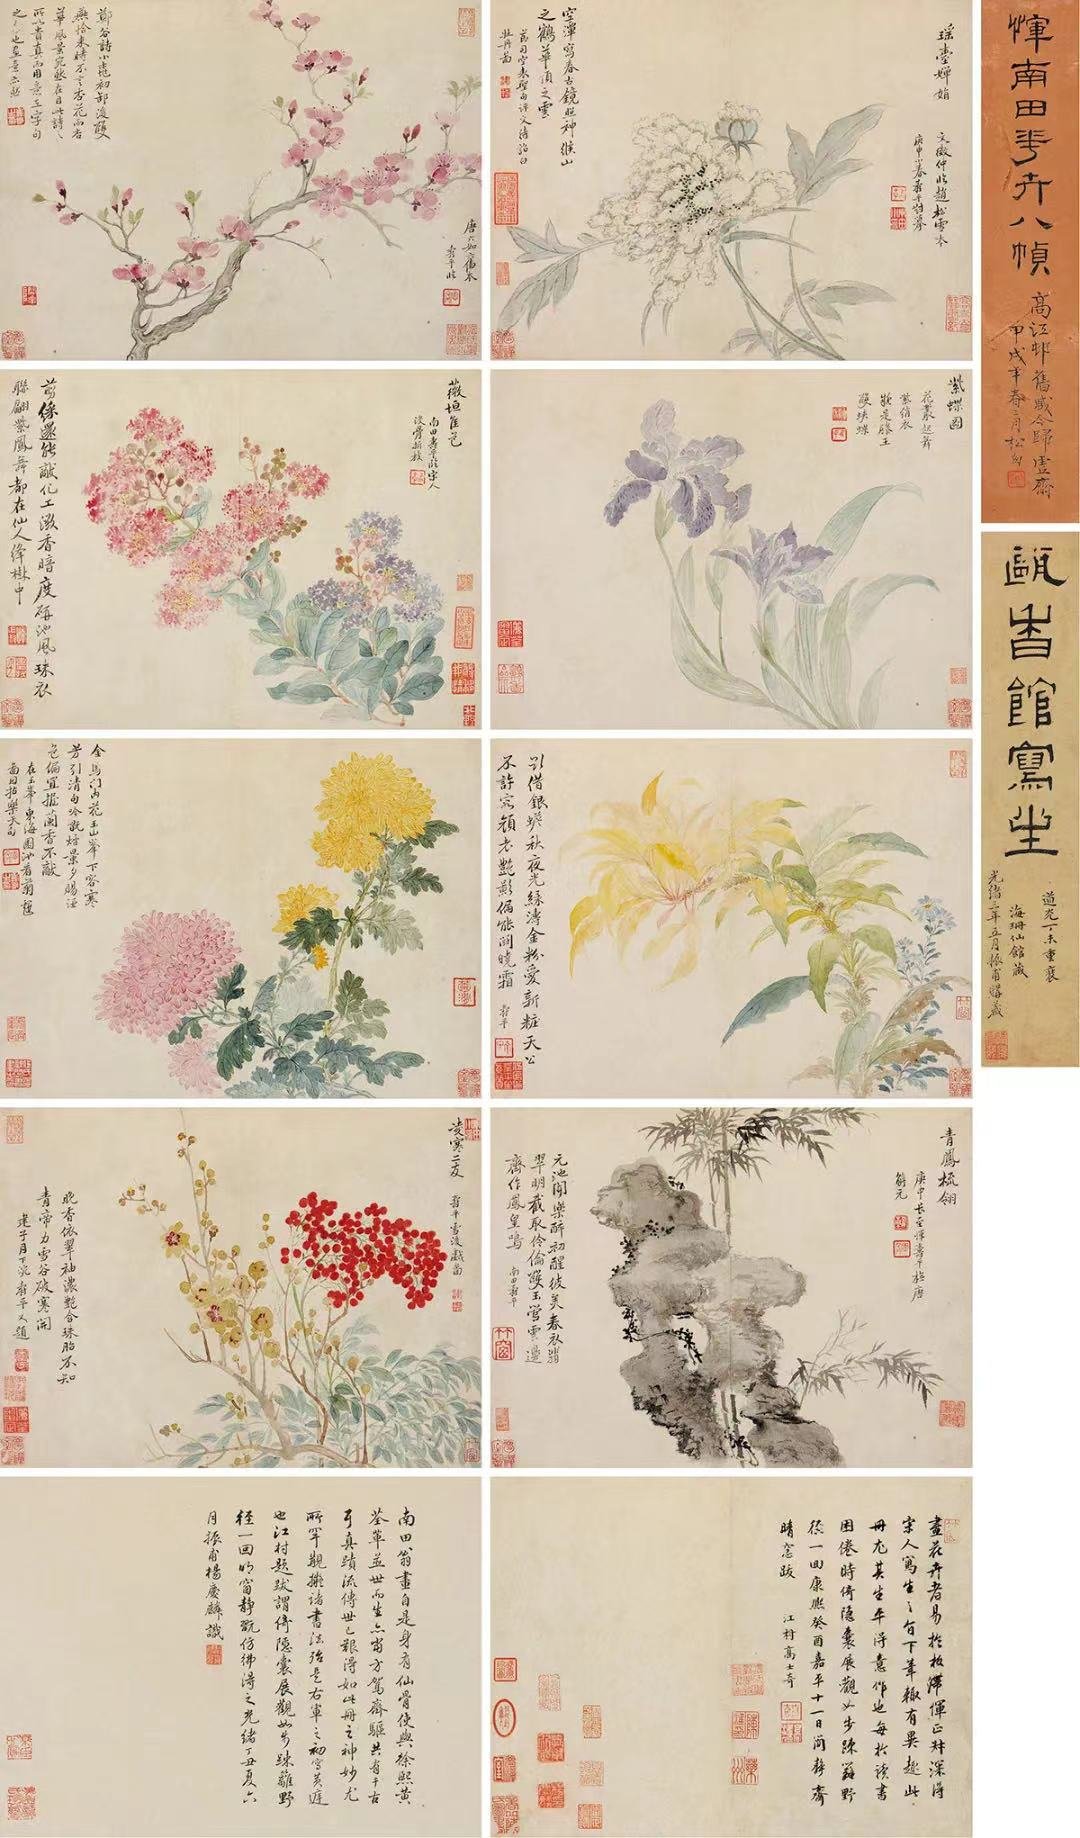 恽寿平，《花卉册》，26x34cmx8 册页，纸本设色，私人藏